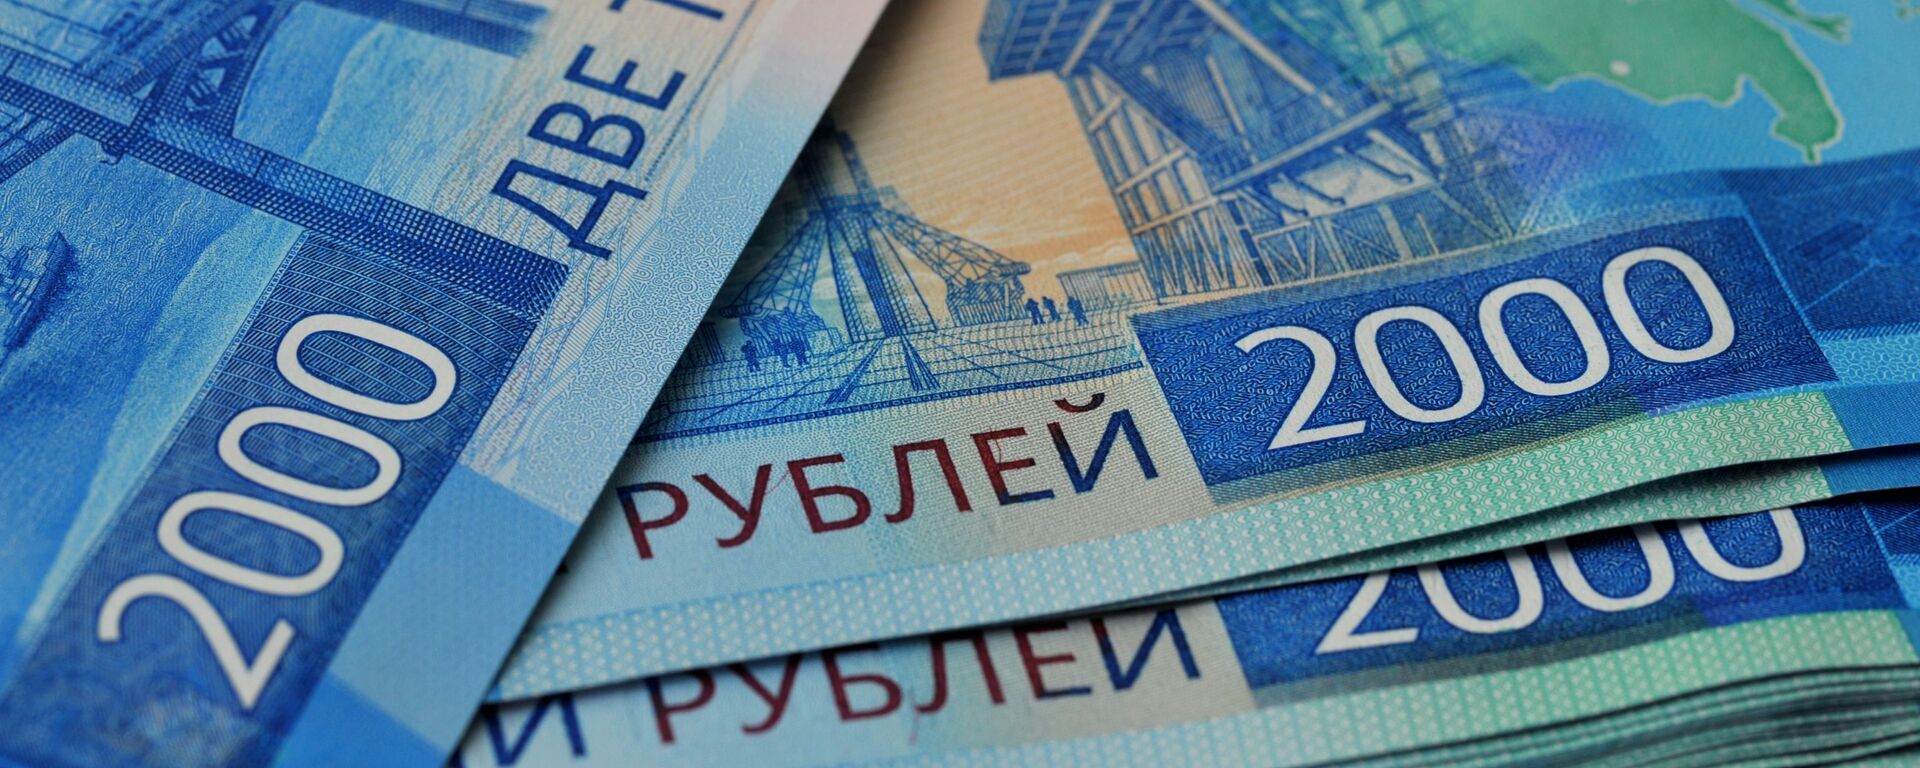 Банкноты номиналом 2000 рублей. - Sputnik Аҧсны, 1920, 31.03.2021